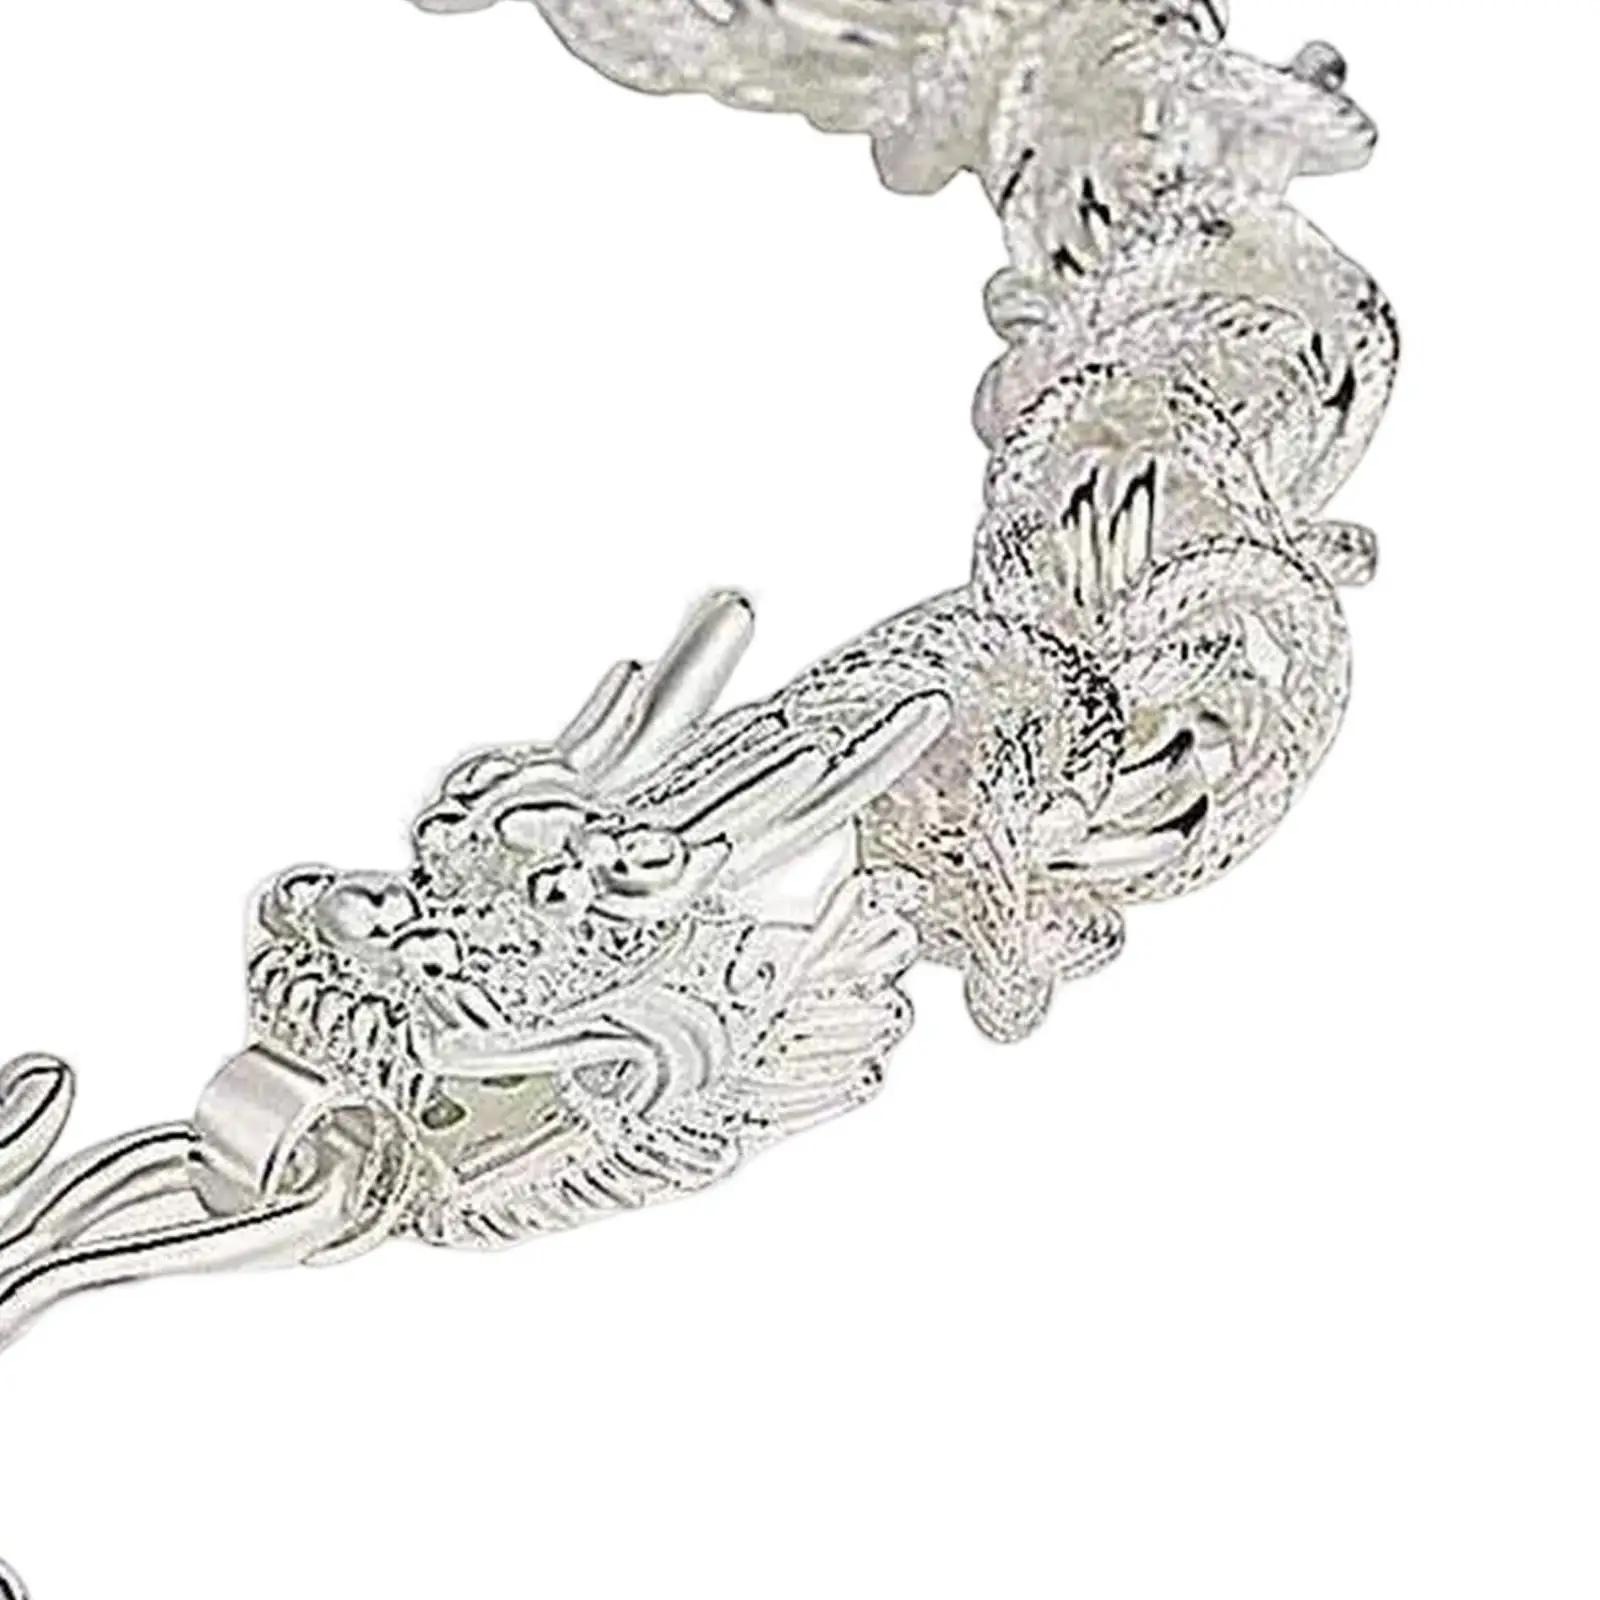 Mens Dragon Head Link Chain Bracelet Novelty Retro Style  Boutique Ornament Bangle Decor Heavy Bracelet Vintage Ouroboros